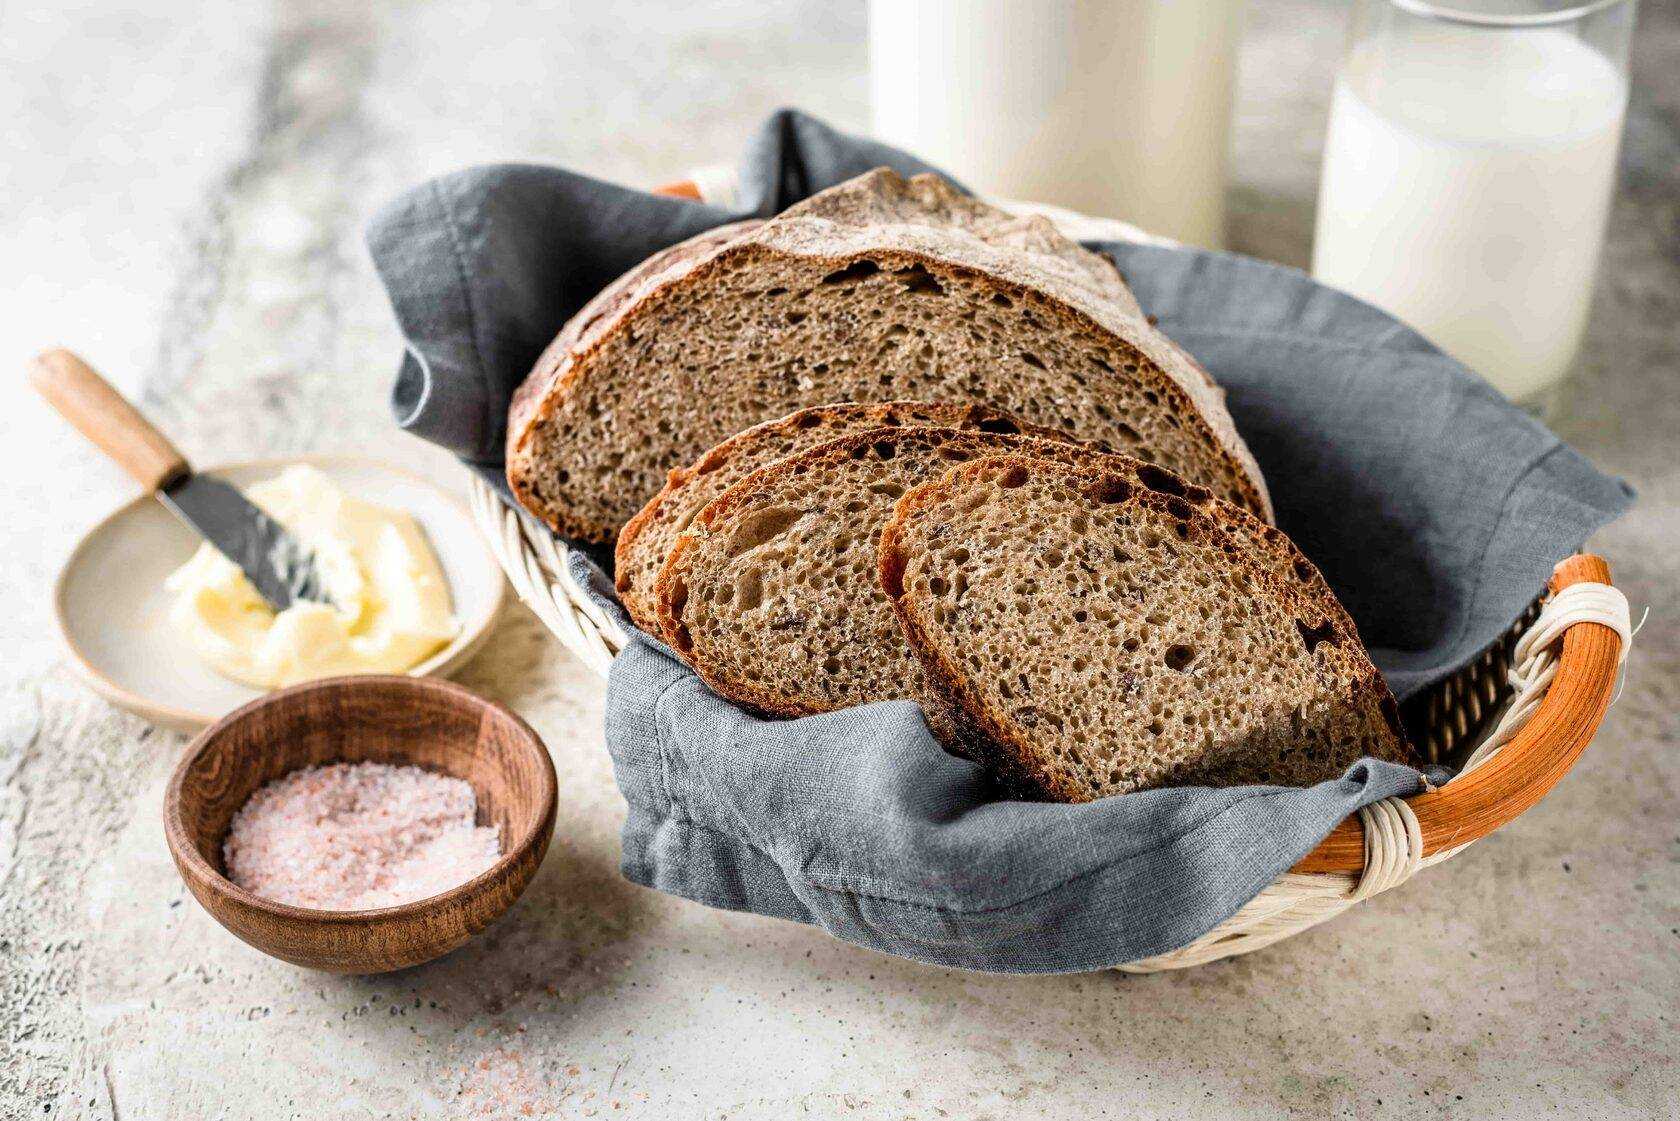 Рецепт хлеба из ржаной муки на закваске. Хлеб на закваске. Ржаной хлеб на закваске. Заварка для ржаного хлеба. Домашний хлеб на закваске.